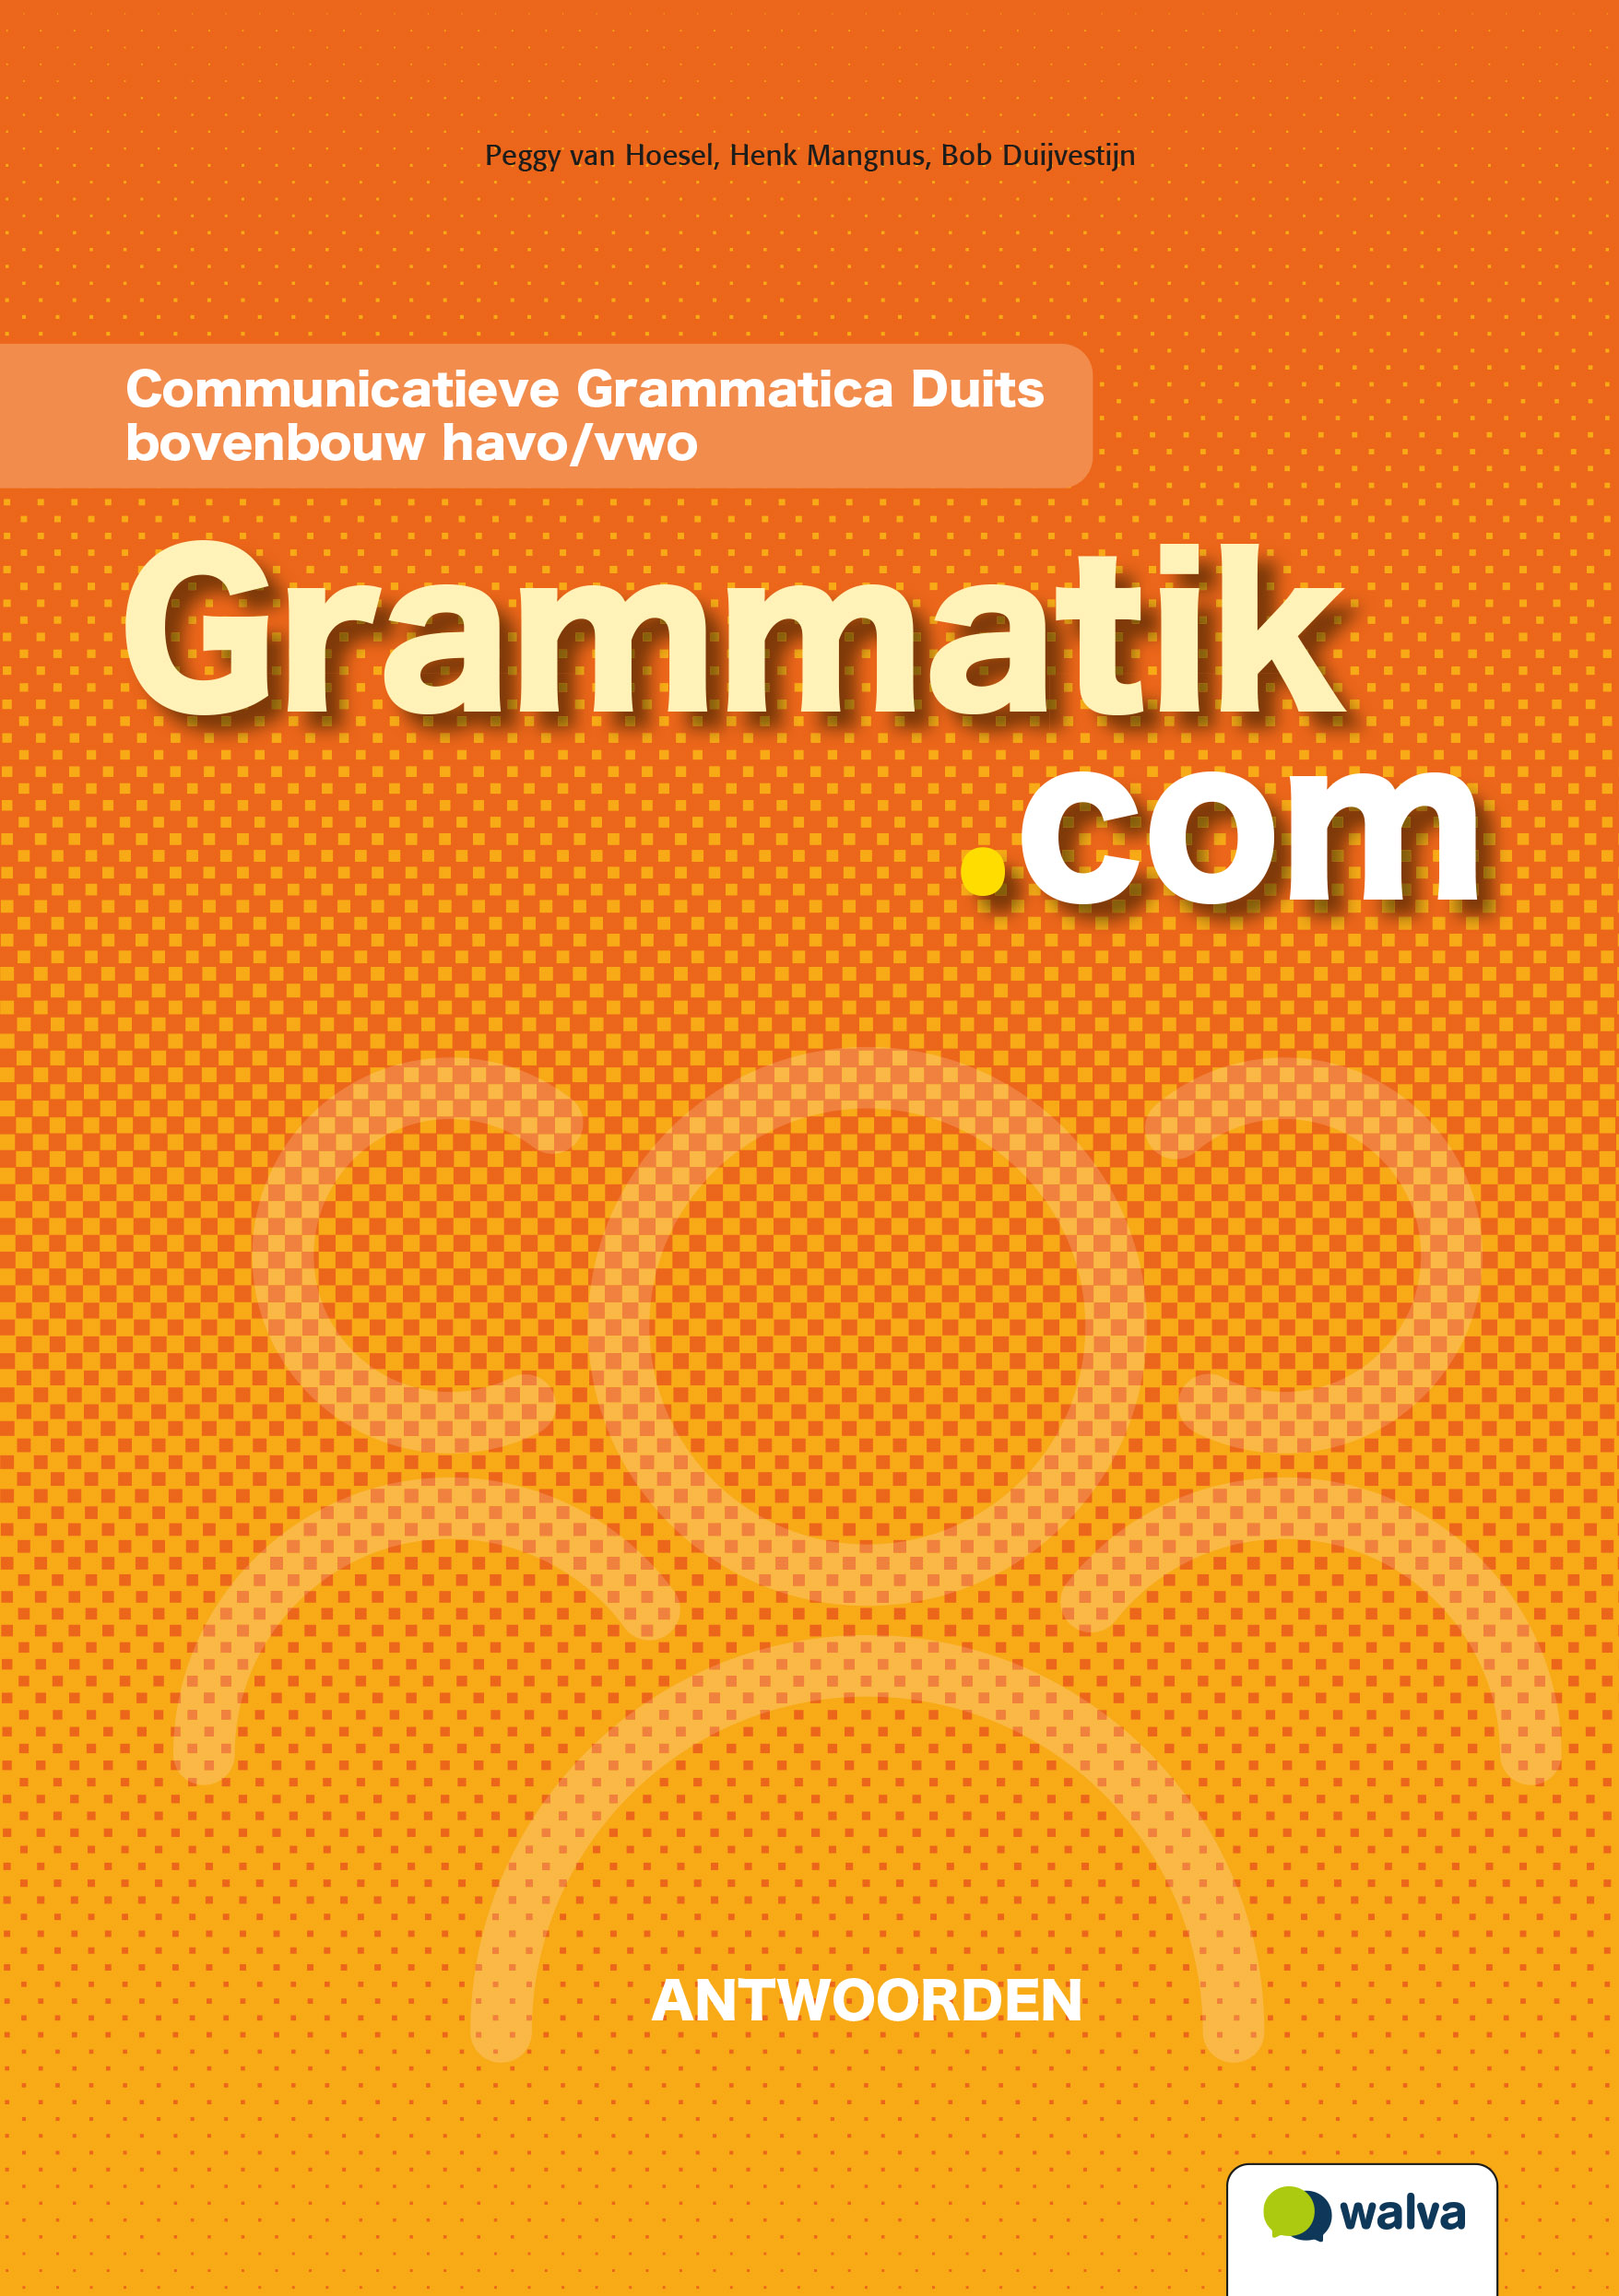 WDHGRM001 Grammatik.com, antwoorden